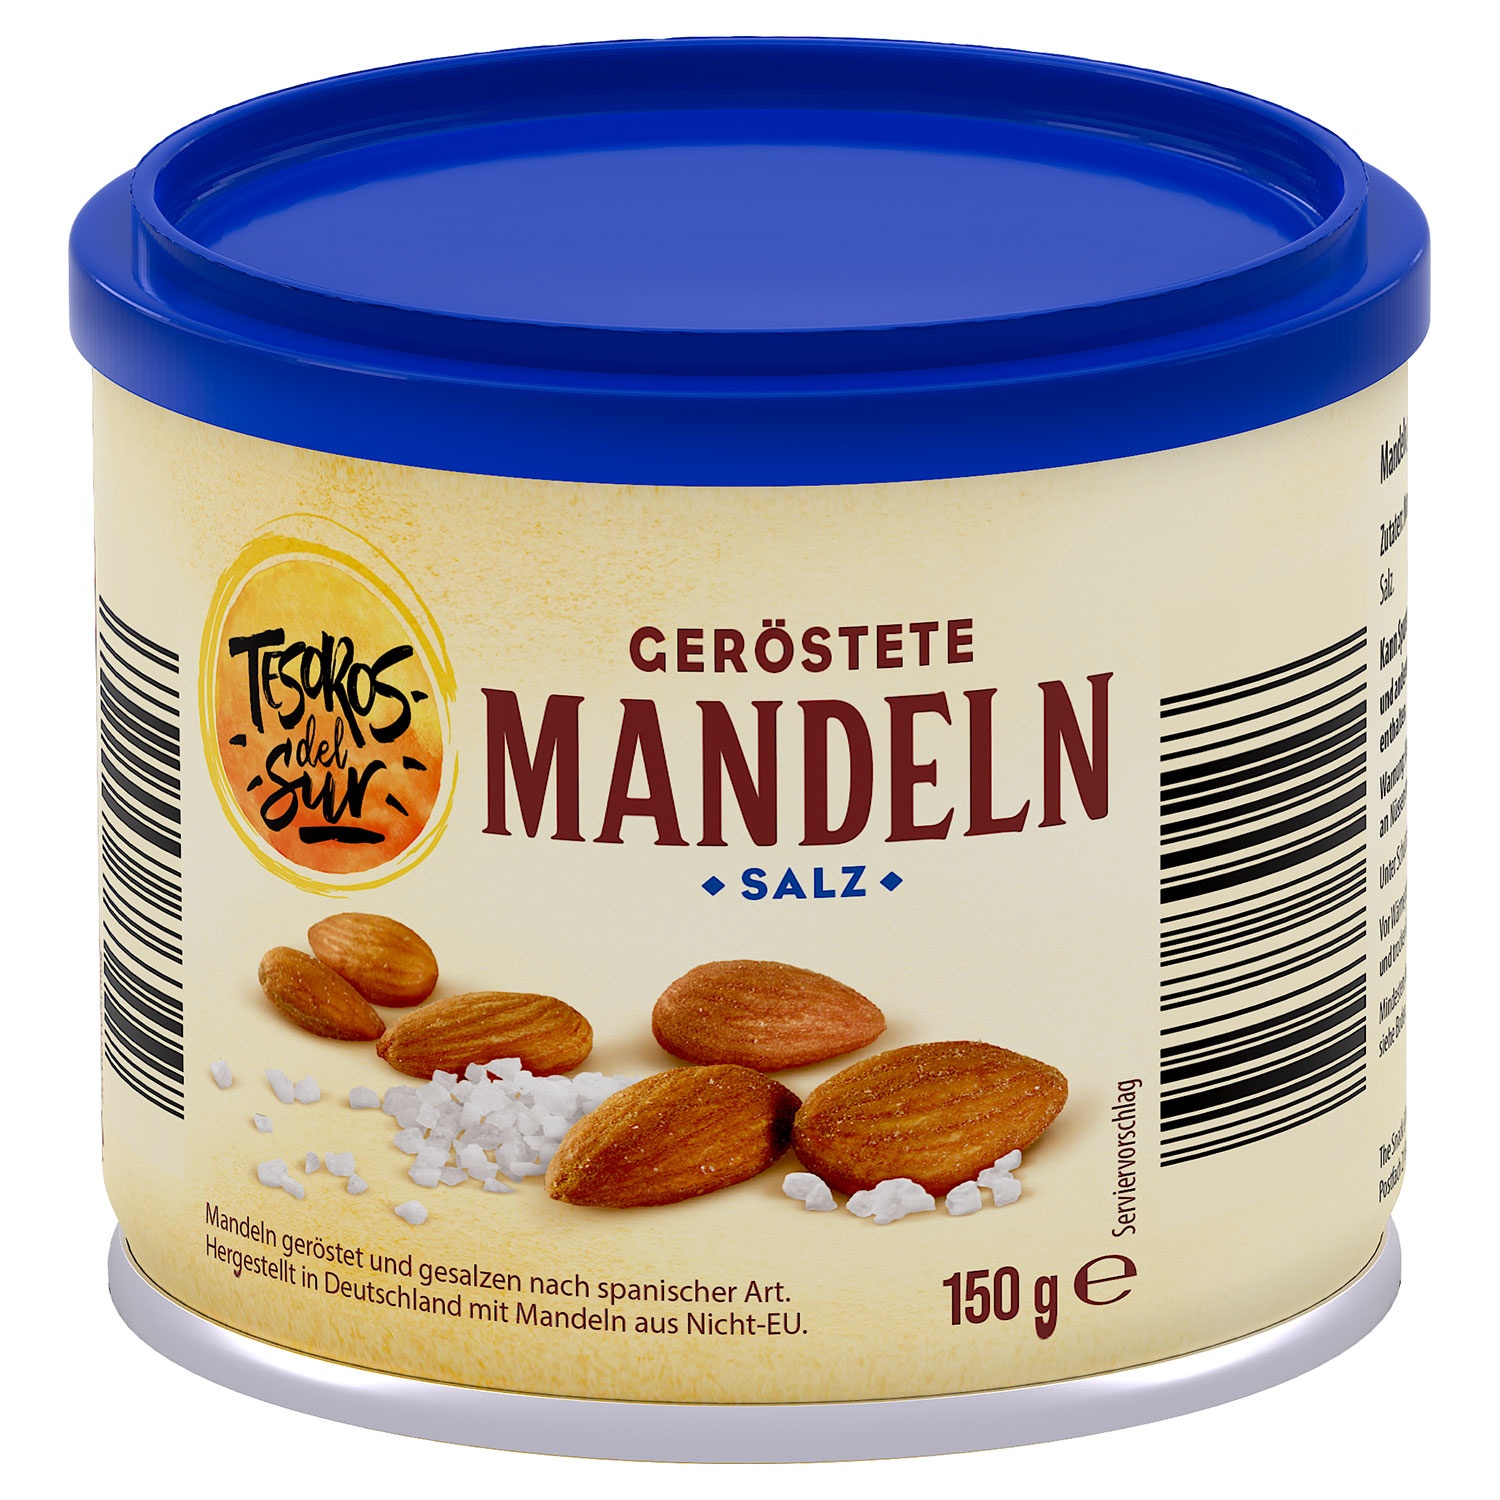 TESOROS DEL SUR Geröstete Snack-Mandeln 150 g